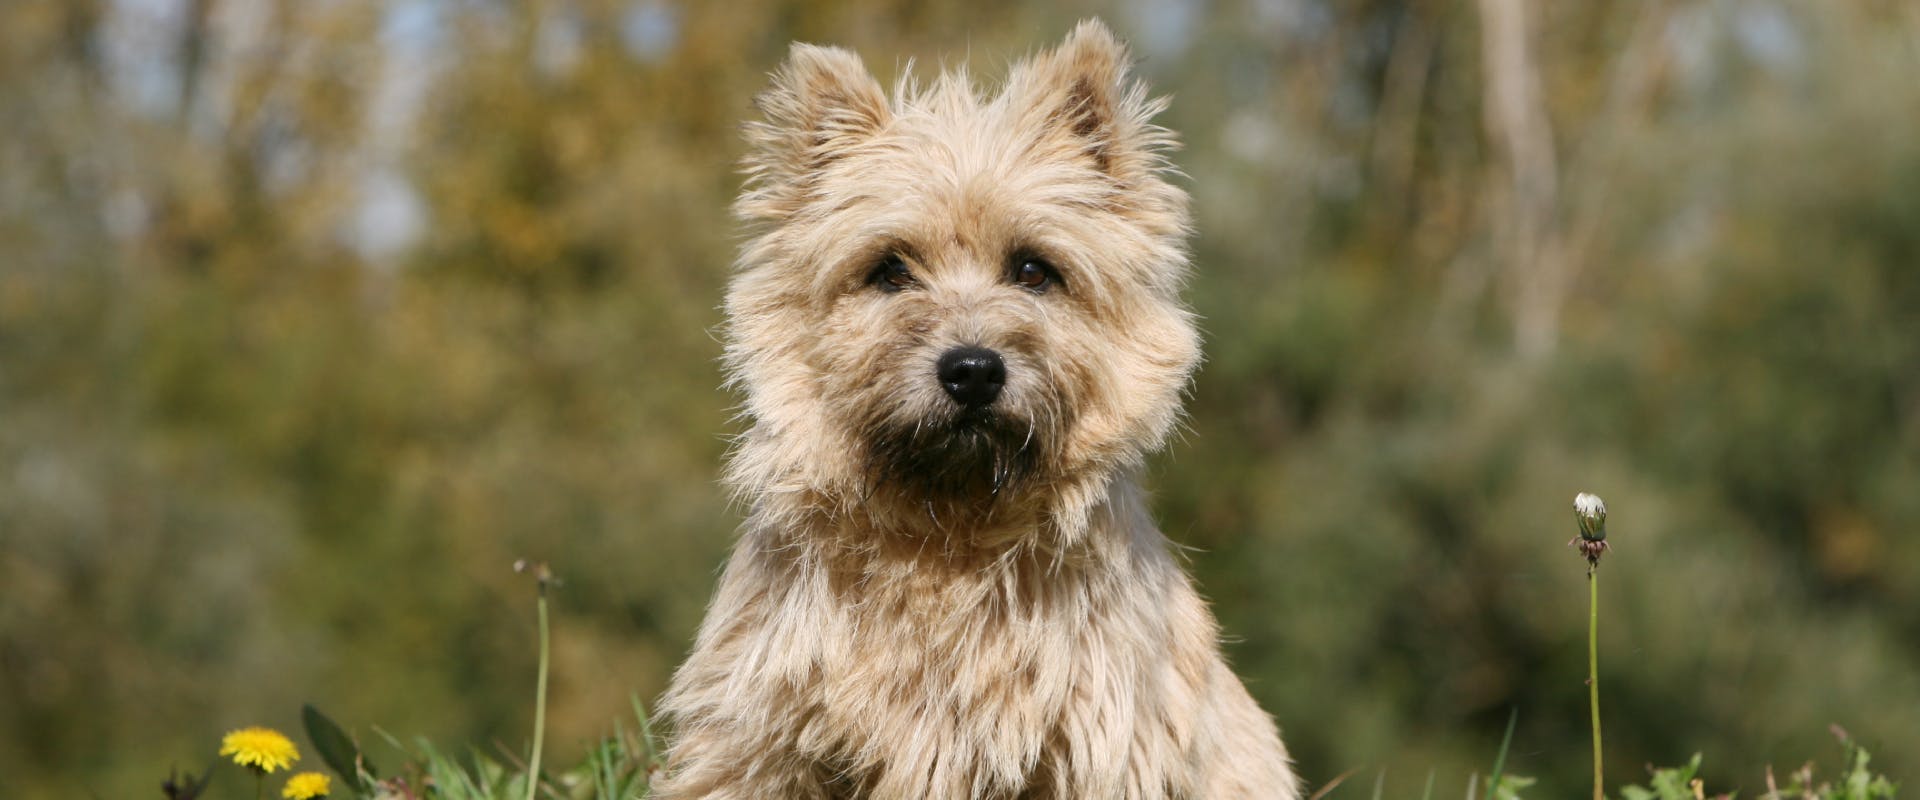 A Cairn Terrier.